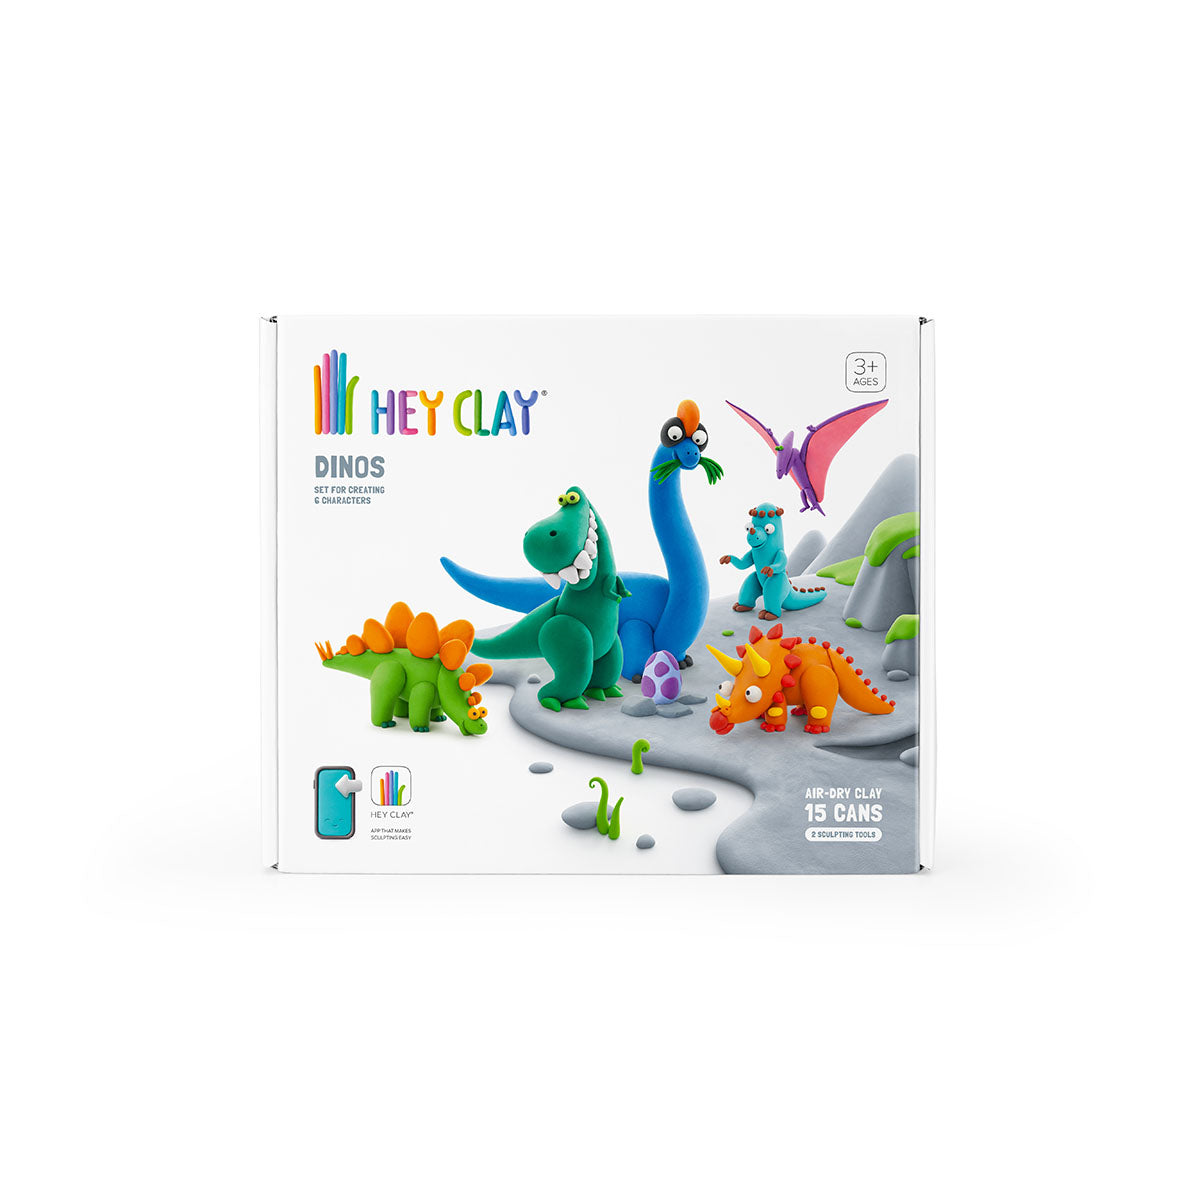 Boetseer vrolijk uitziende gekleurde figuurtjes met de boetseerklei én bijbehorende app van HeyClay in de variant Dinos. 15 stuks klei, plakt niet en droogt snel. Voor creatieve en leergierige kinderen. VanZus